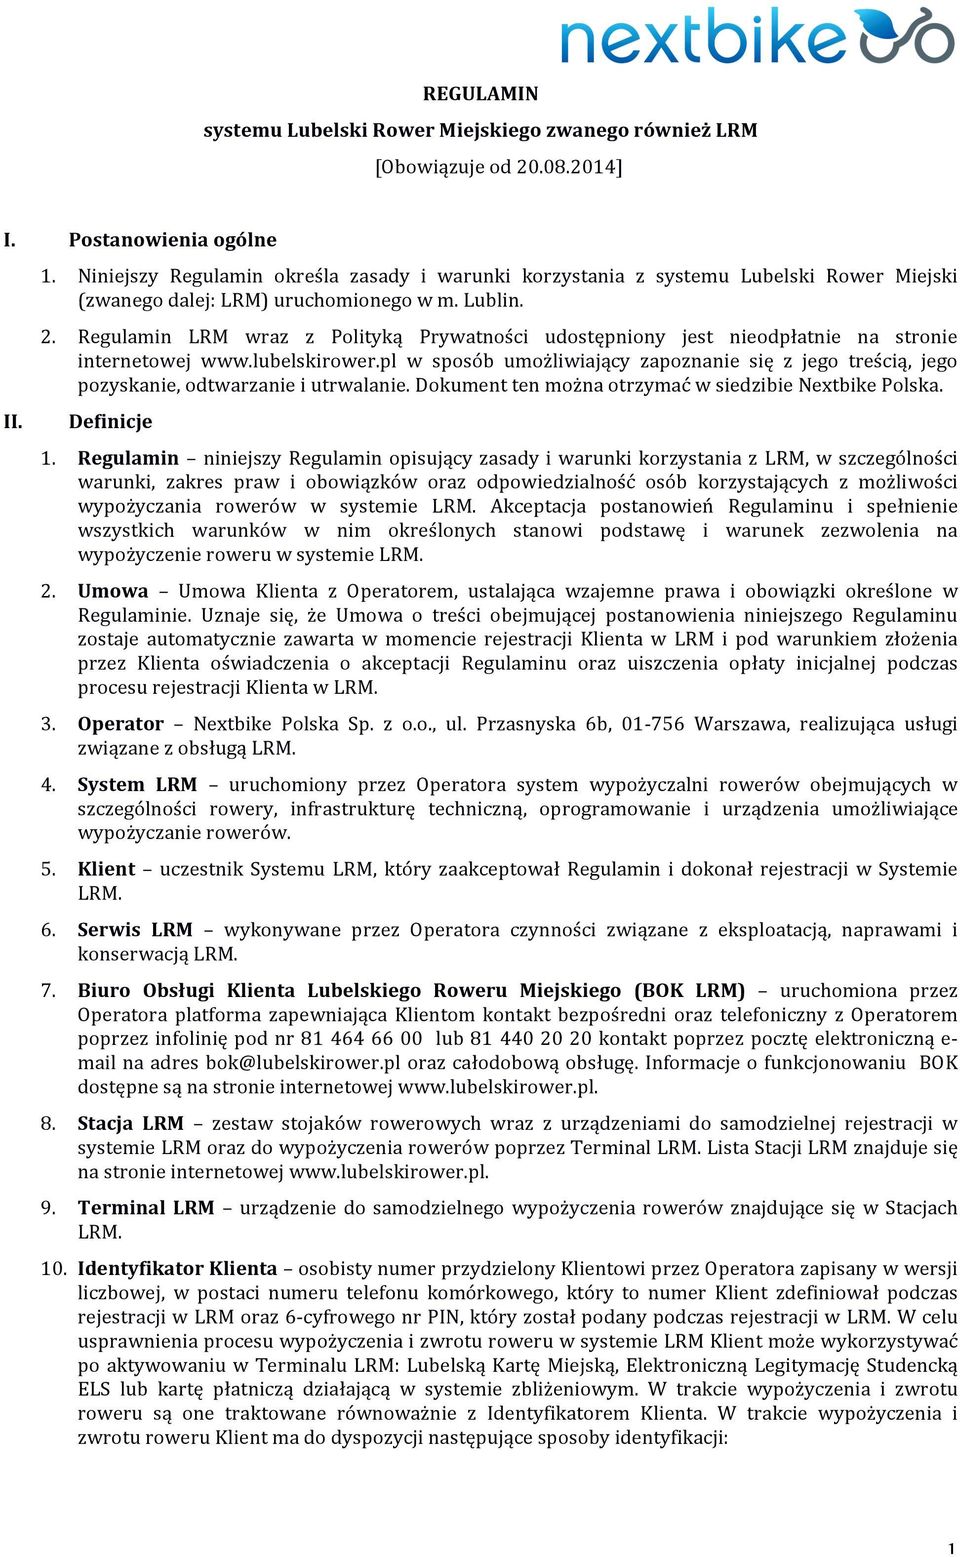 Regulamin LRM wraz z Polityką Prywatności udostępniony jest nieodpłatnie na stronie internetowej www.lubelskirower.